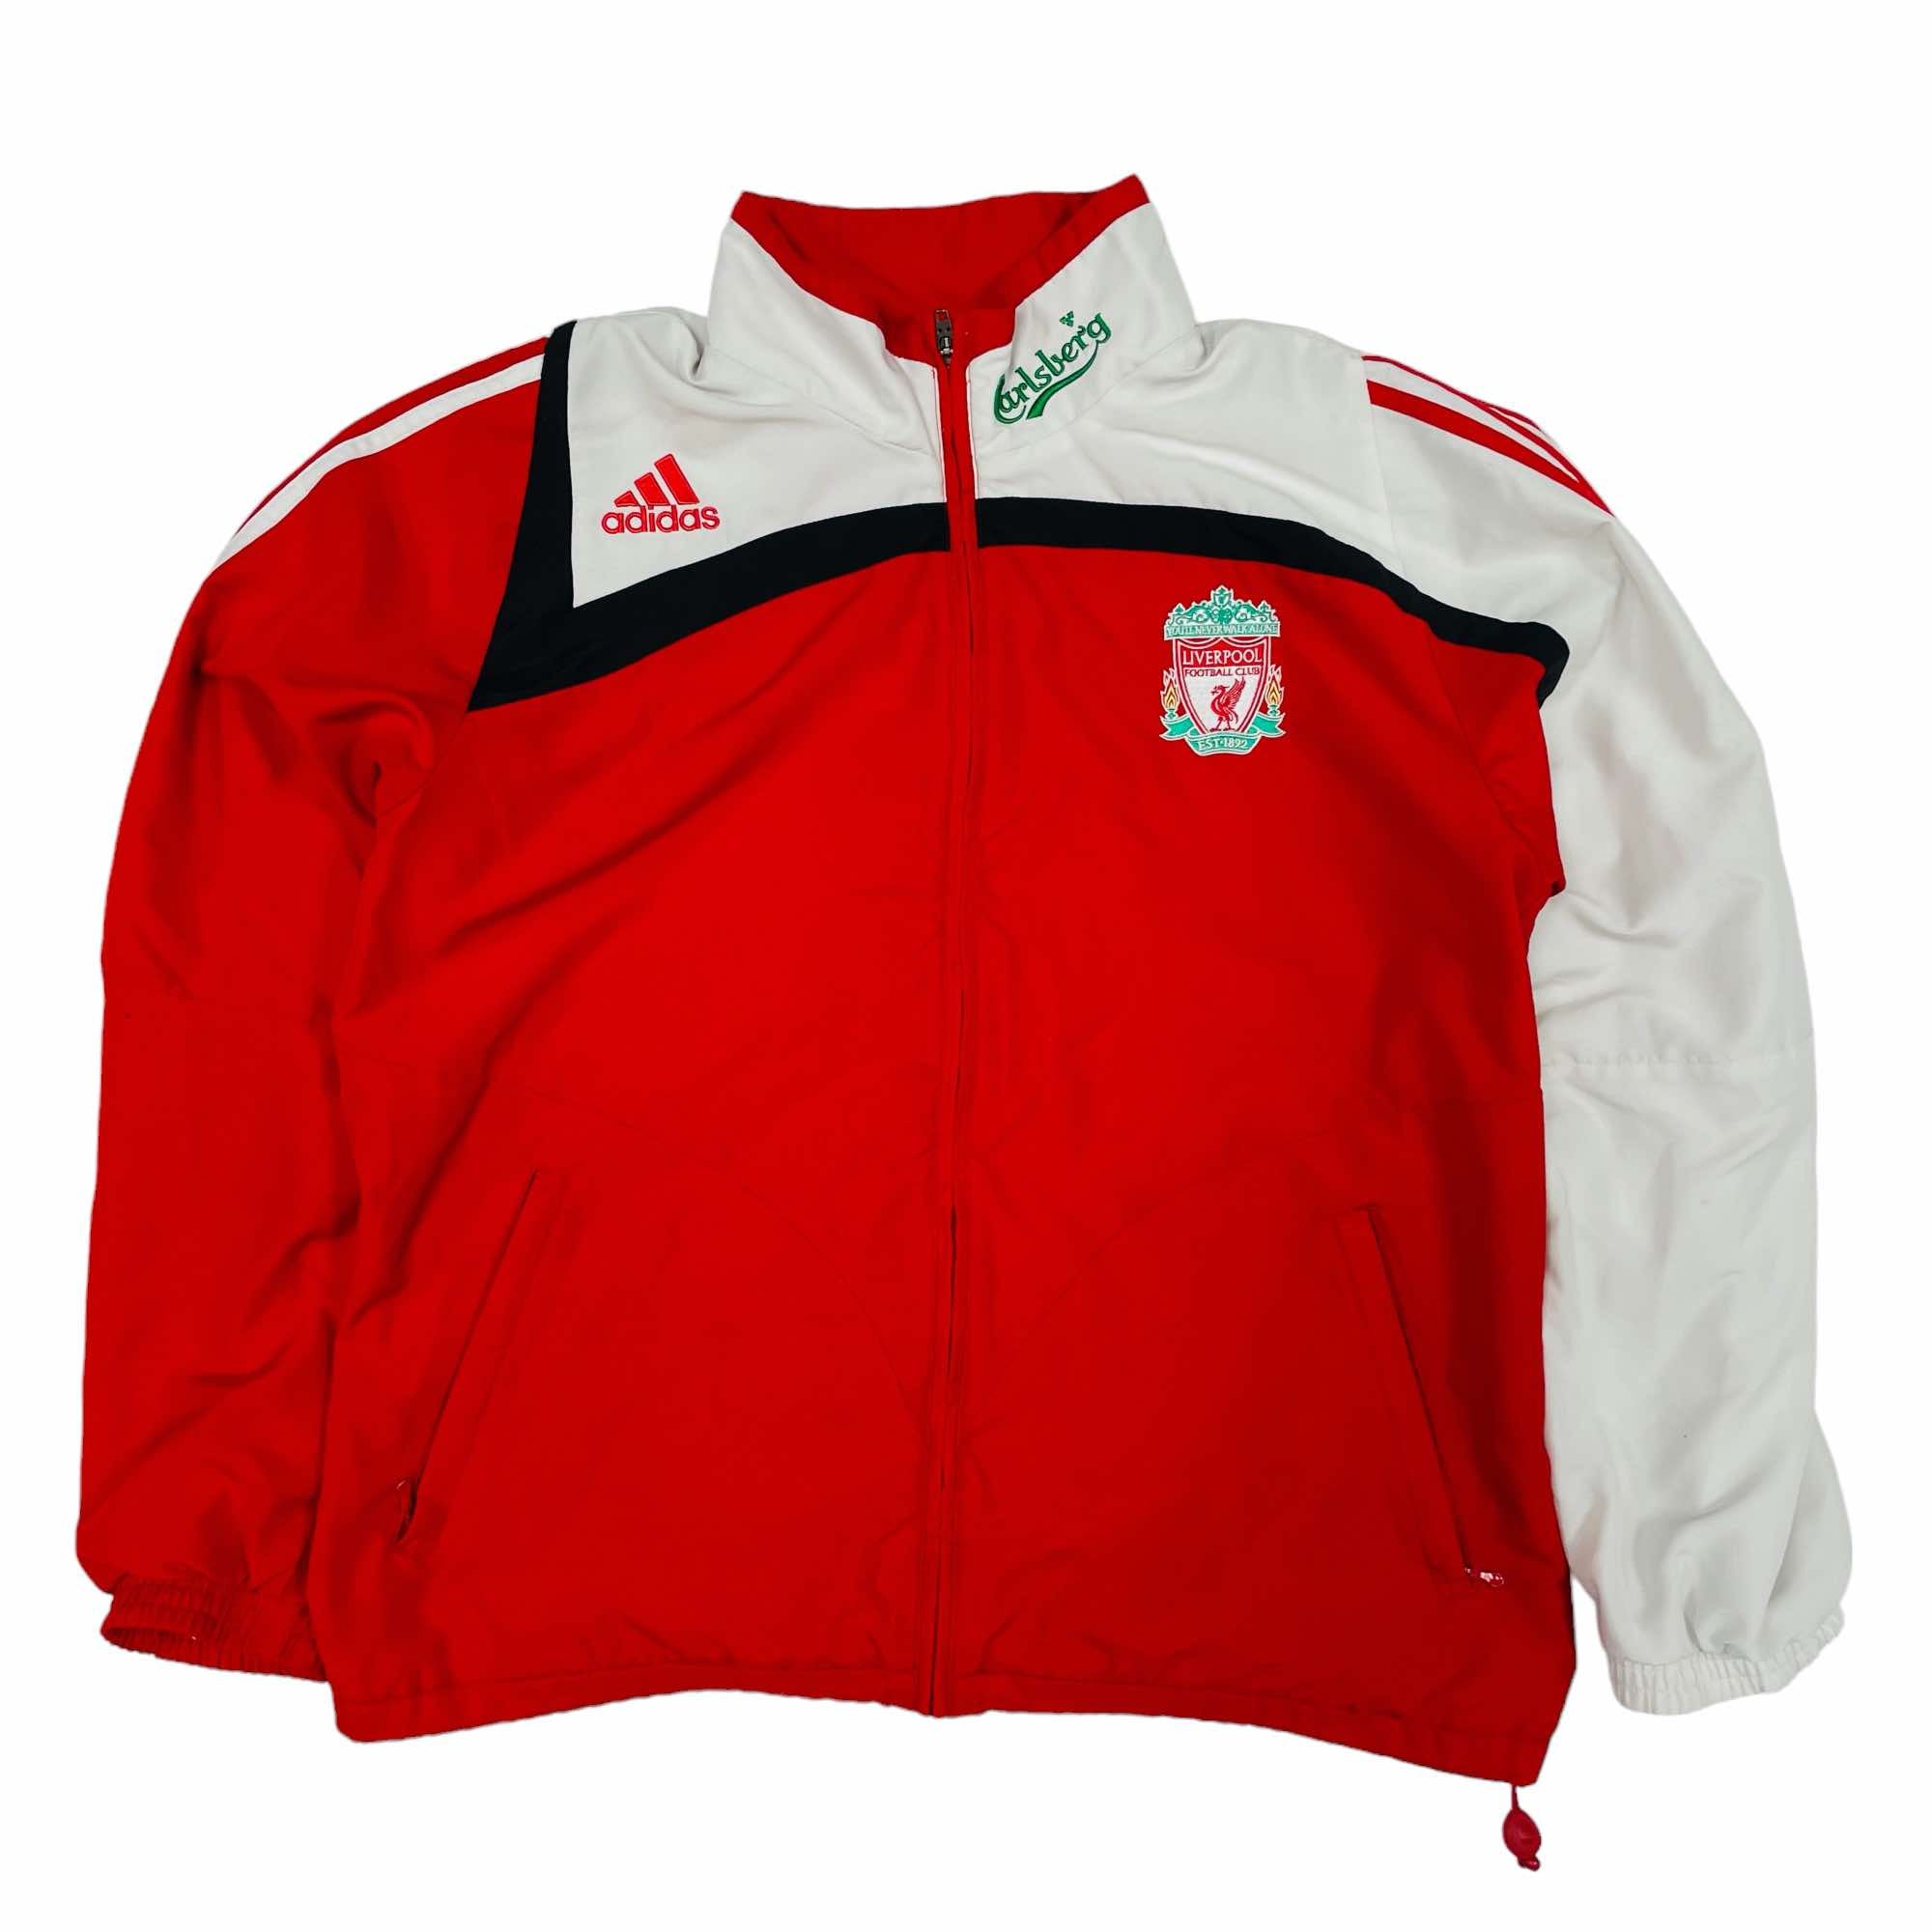 Liverpool 2008/09 Adidas Training Jacket - Large